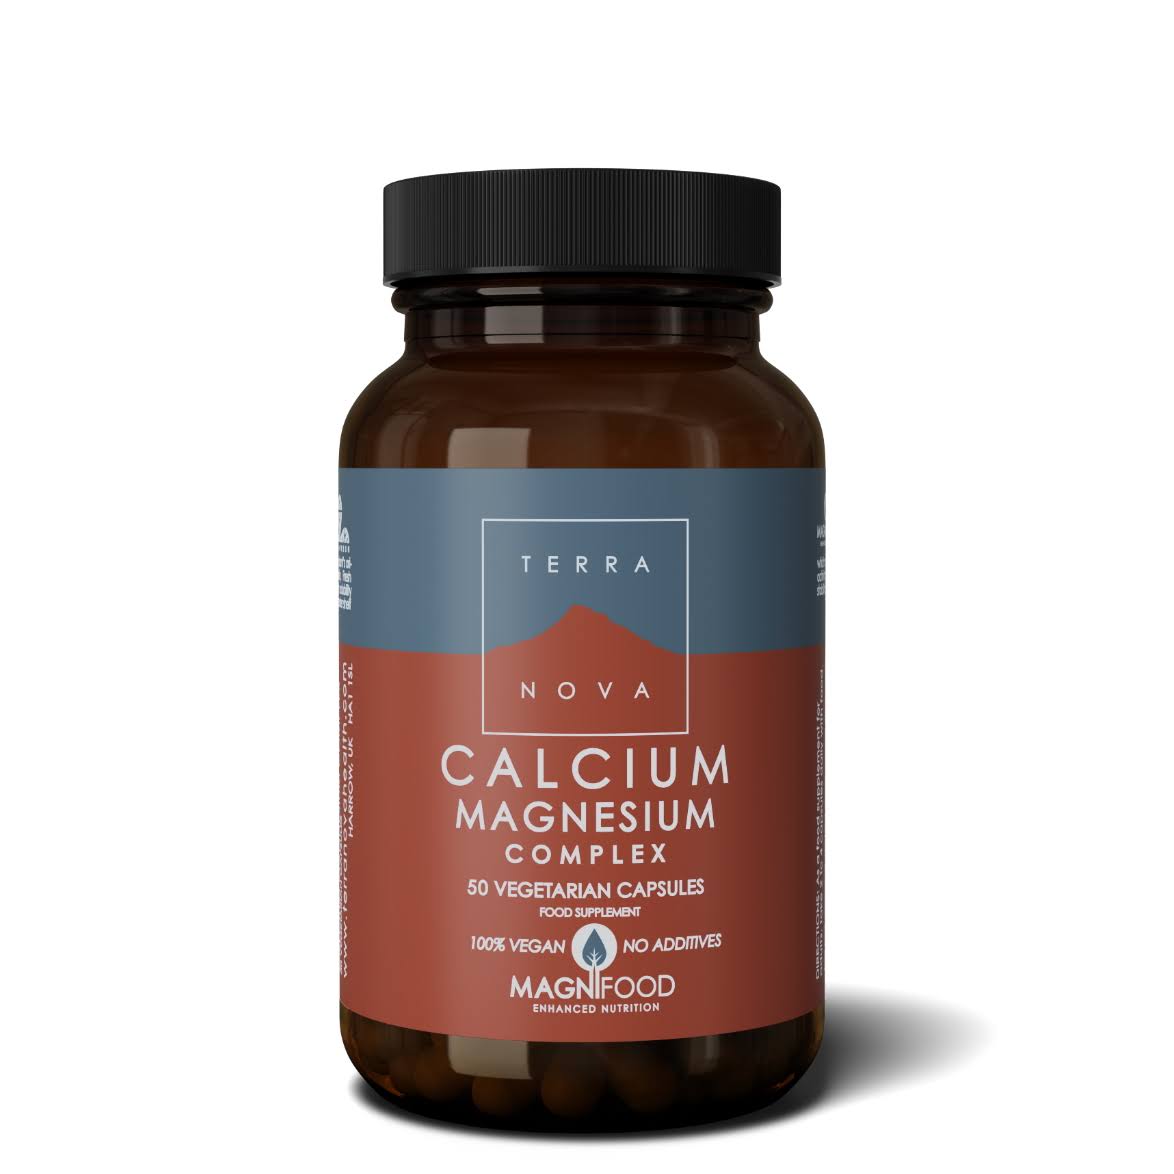 Terra Nova Calcium Magnesium Complex - 50 Capsules